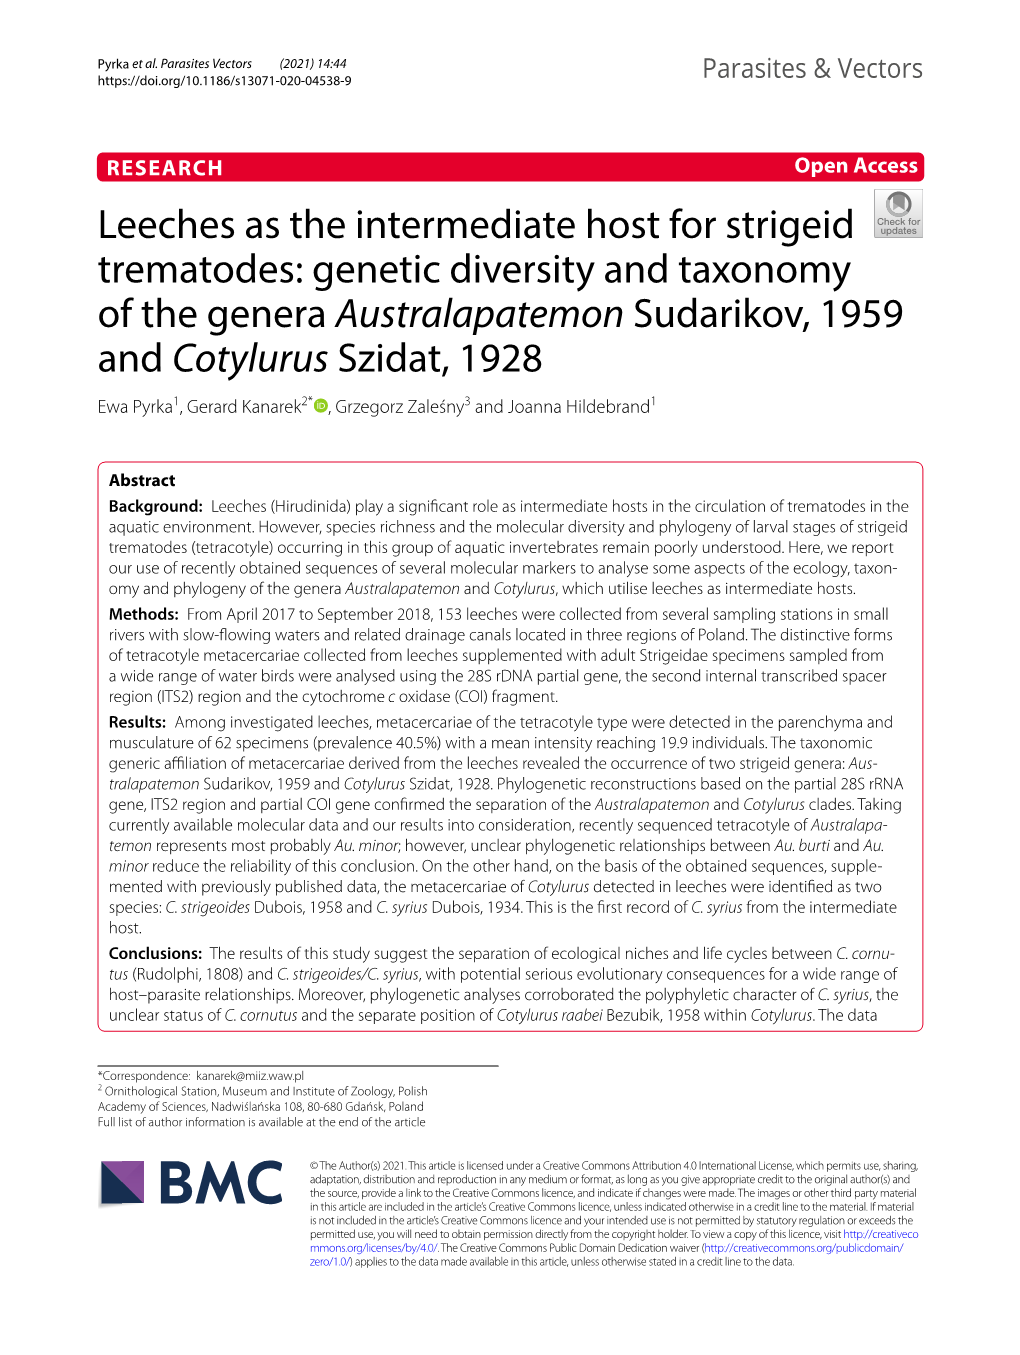 Leeches As the Intermediate Host for Strigeid Trematodes: Genetic